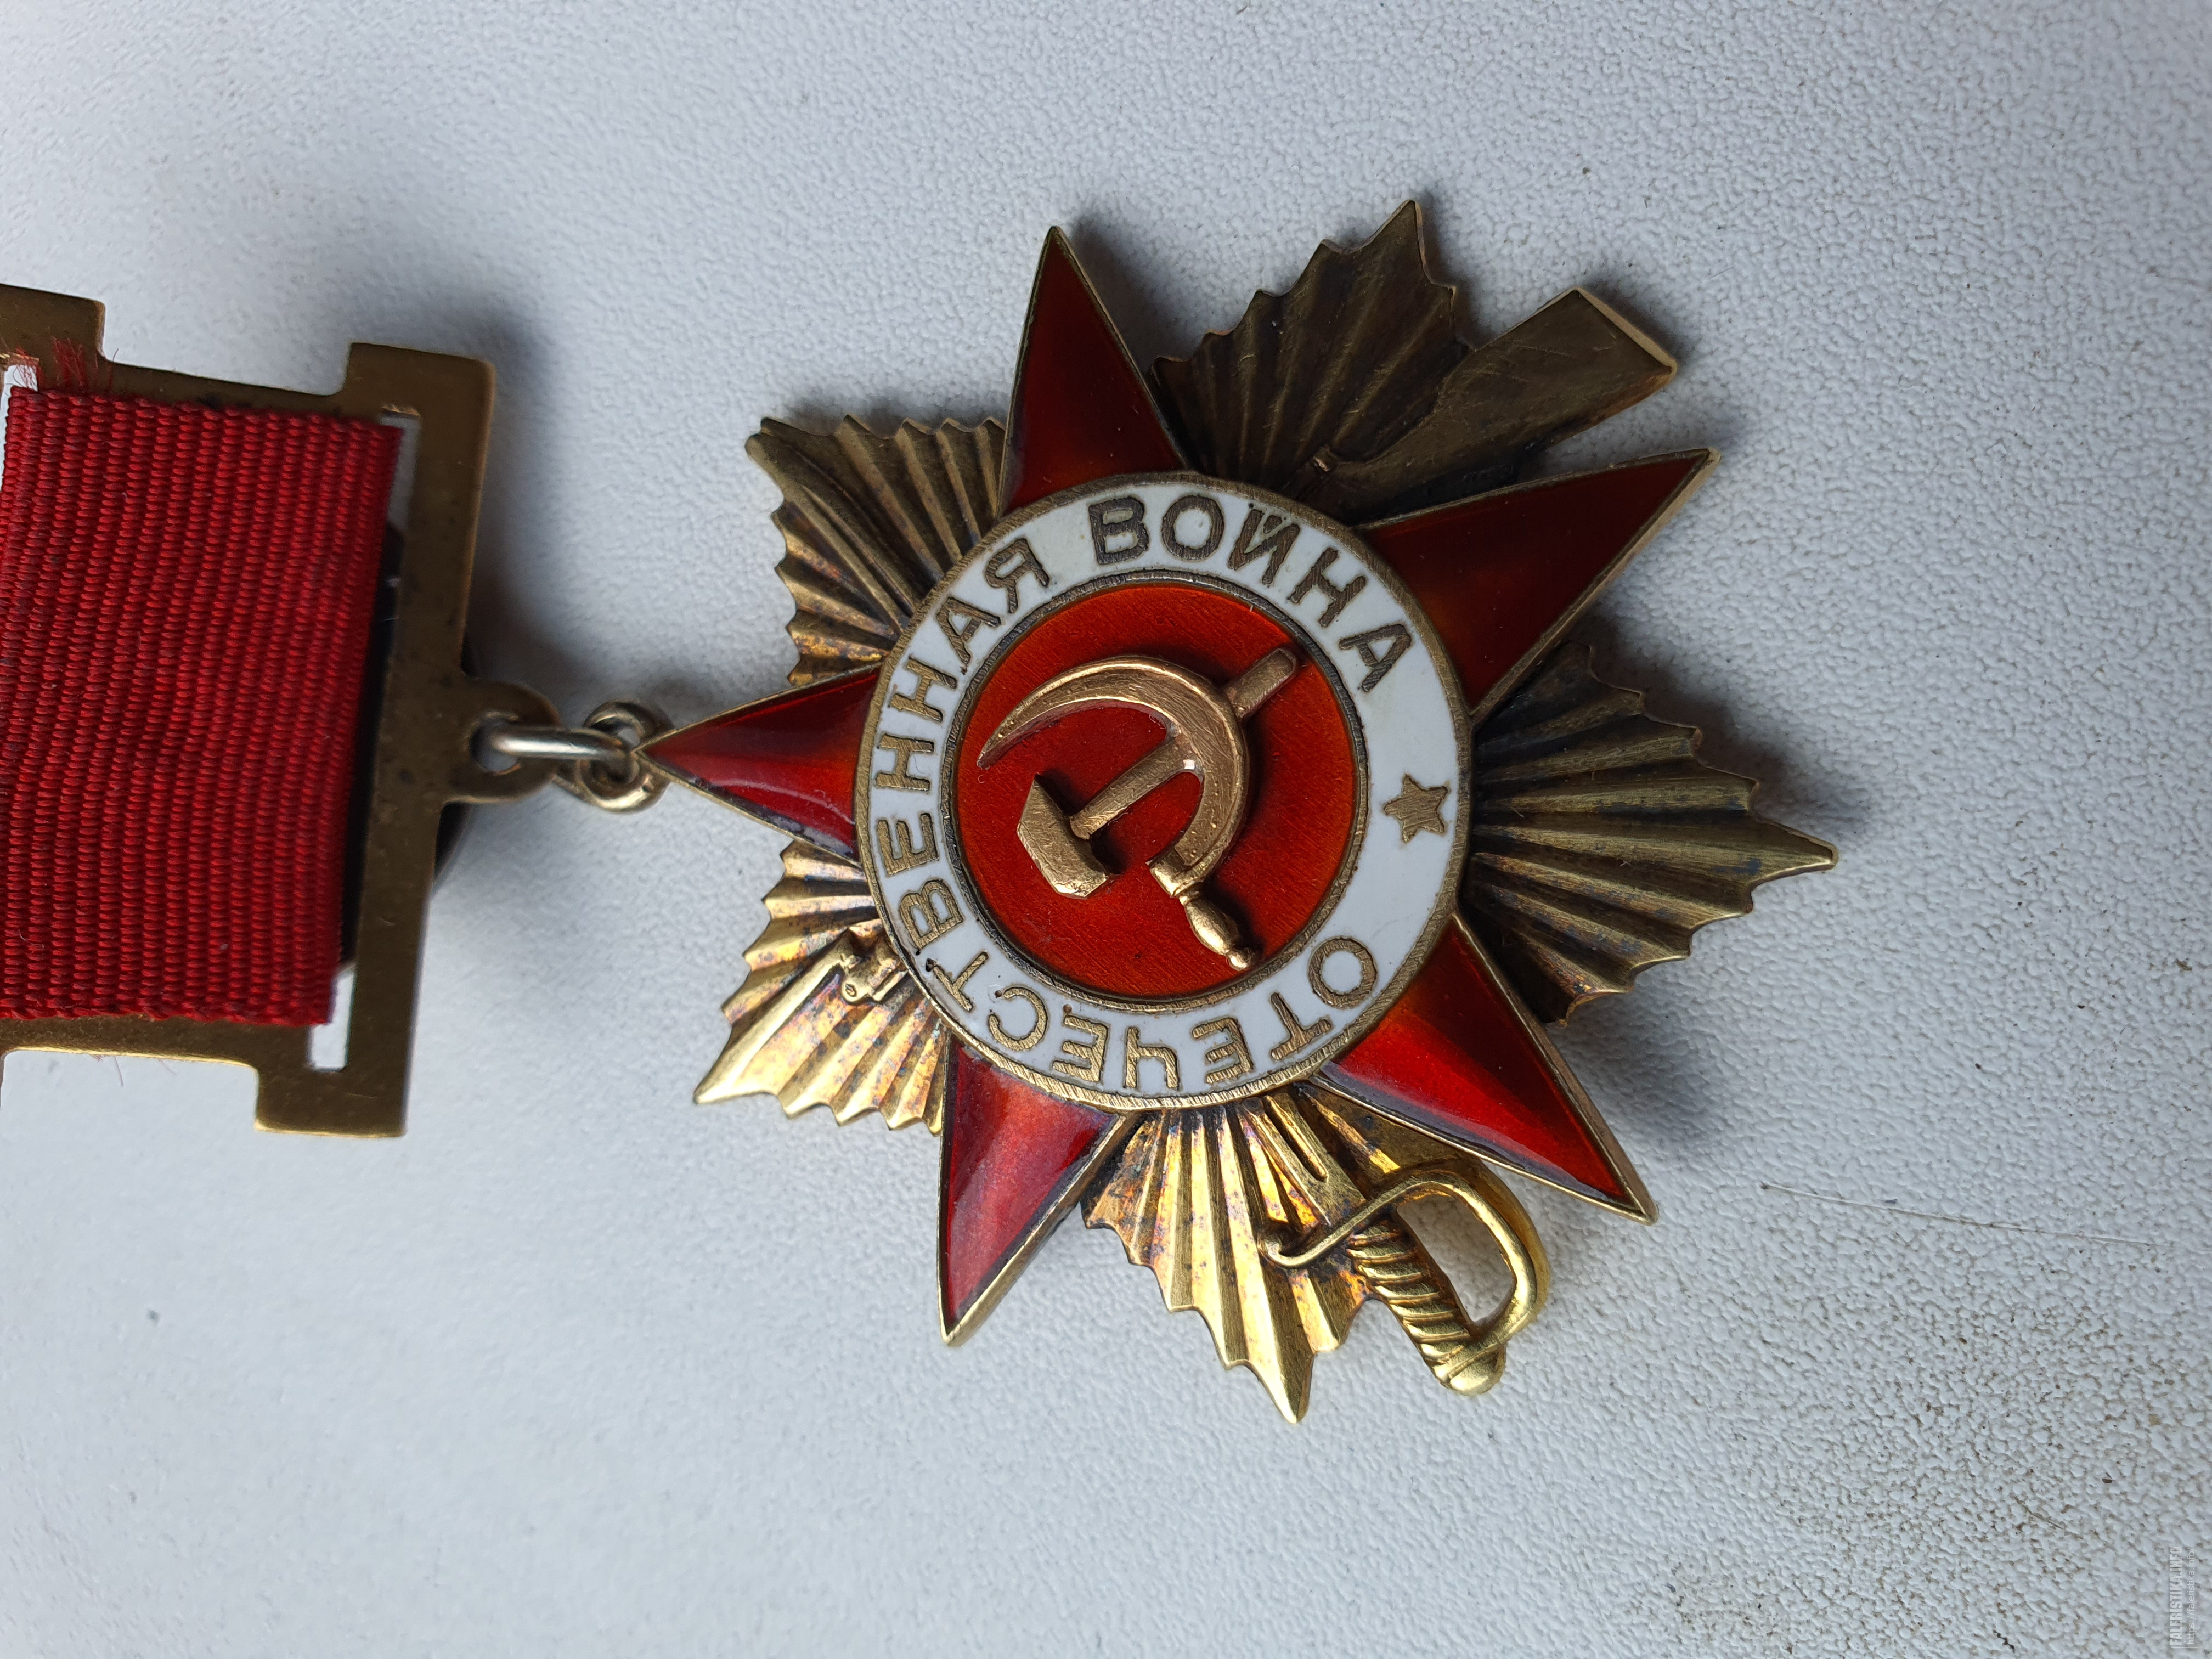 Орден отечественной войны 1 степени 1985 года фото